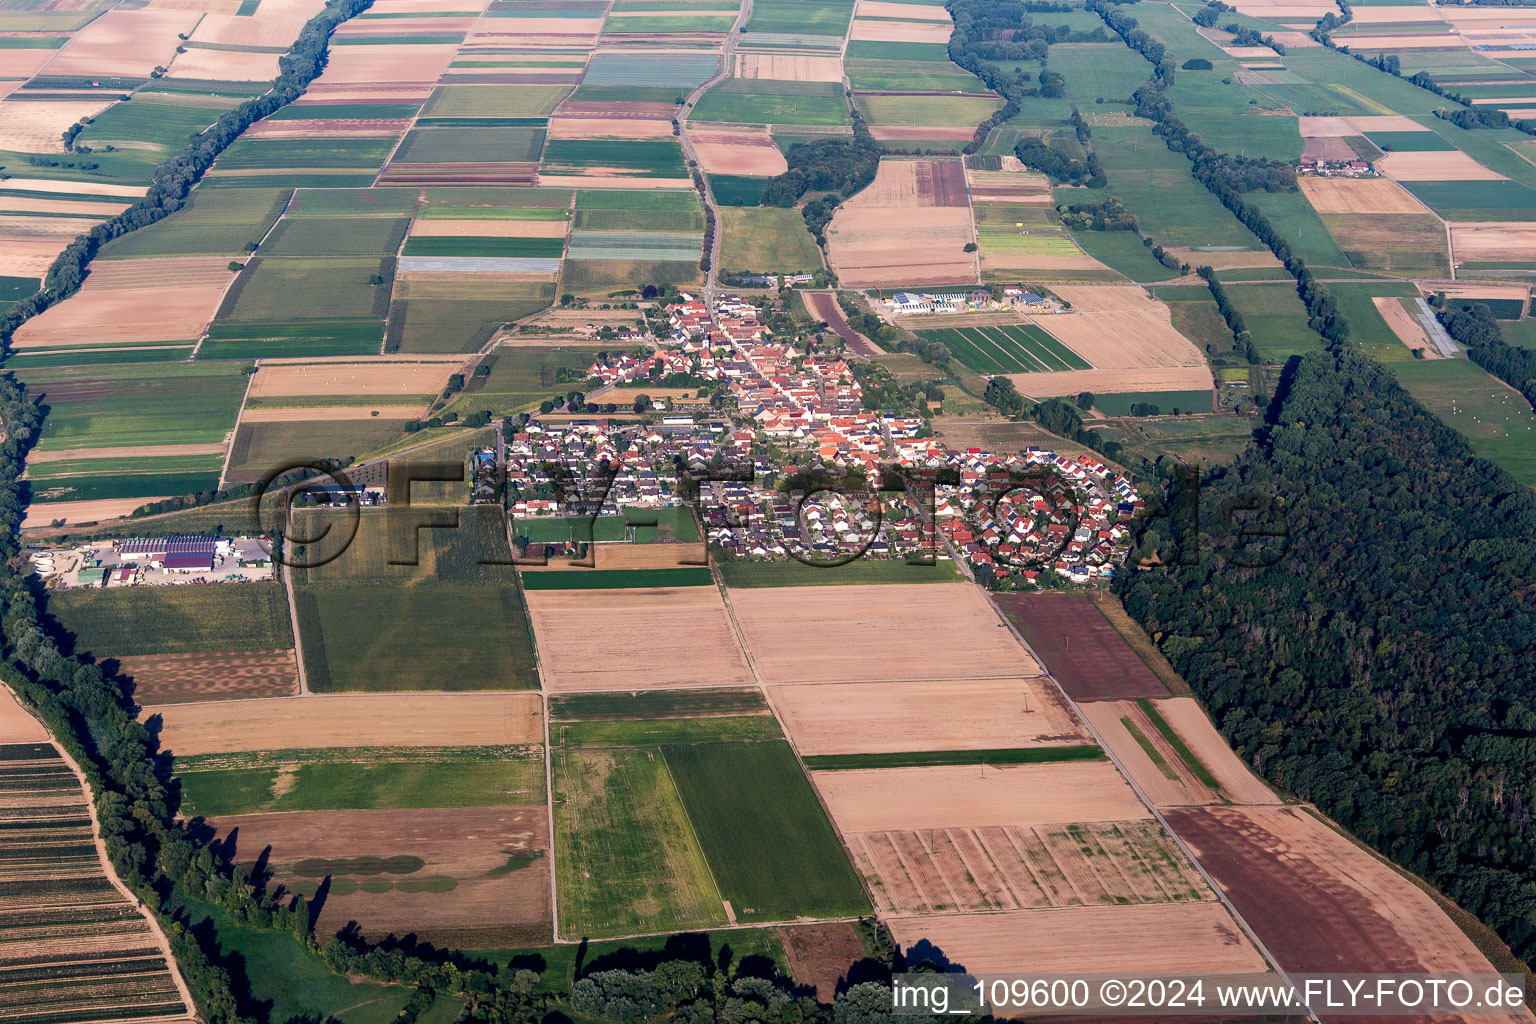 Freisbach dans le département Rhénanie-Palatinat, Allemagne depuis l'avion